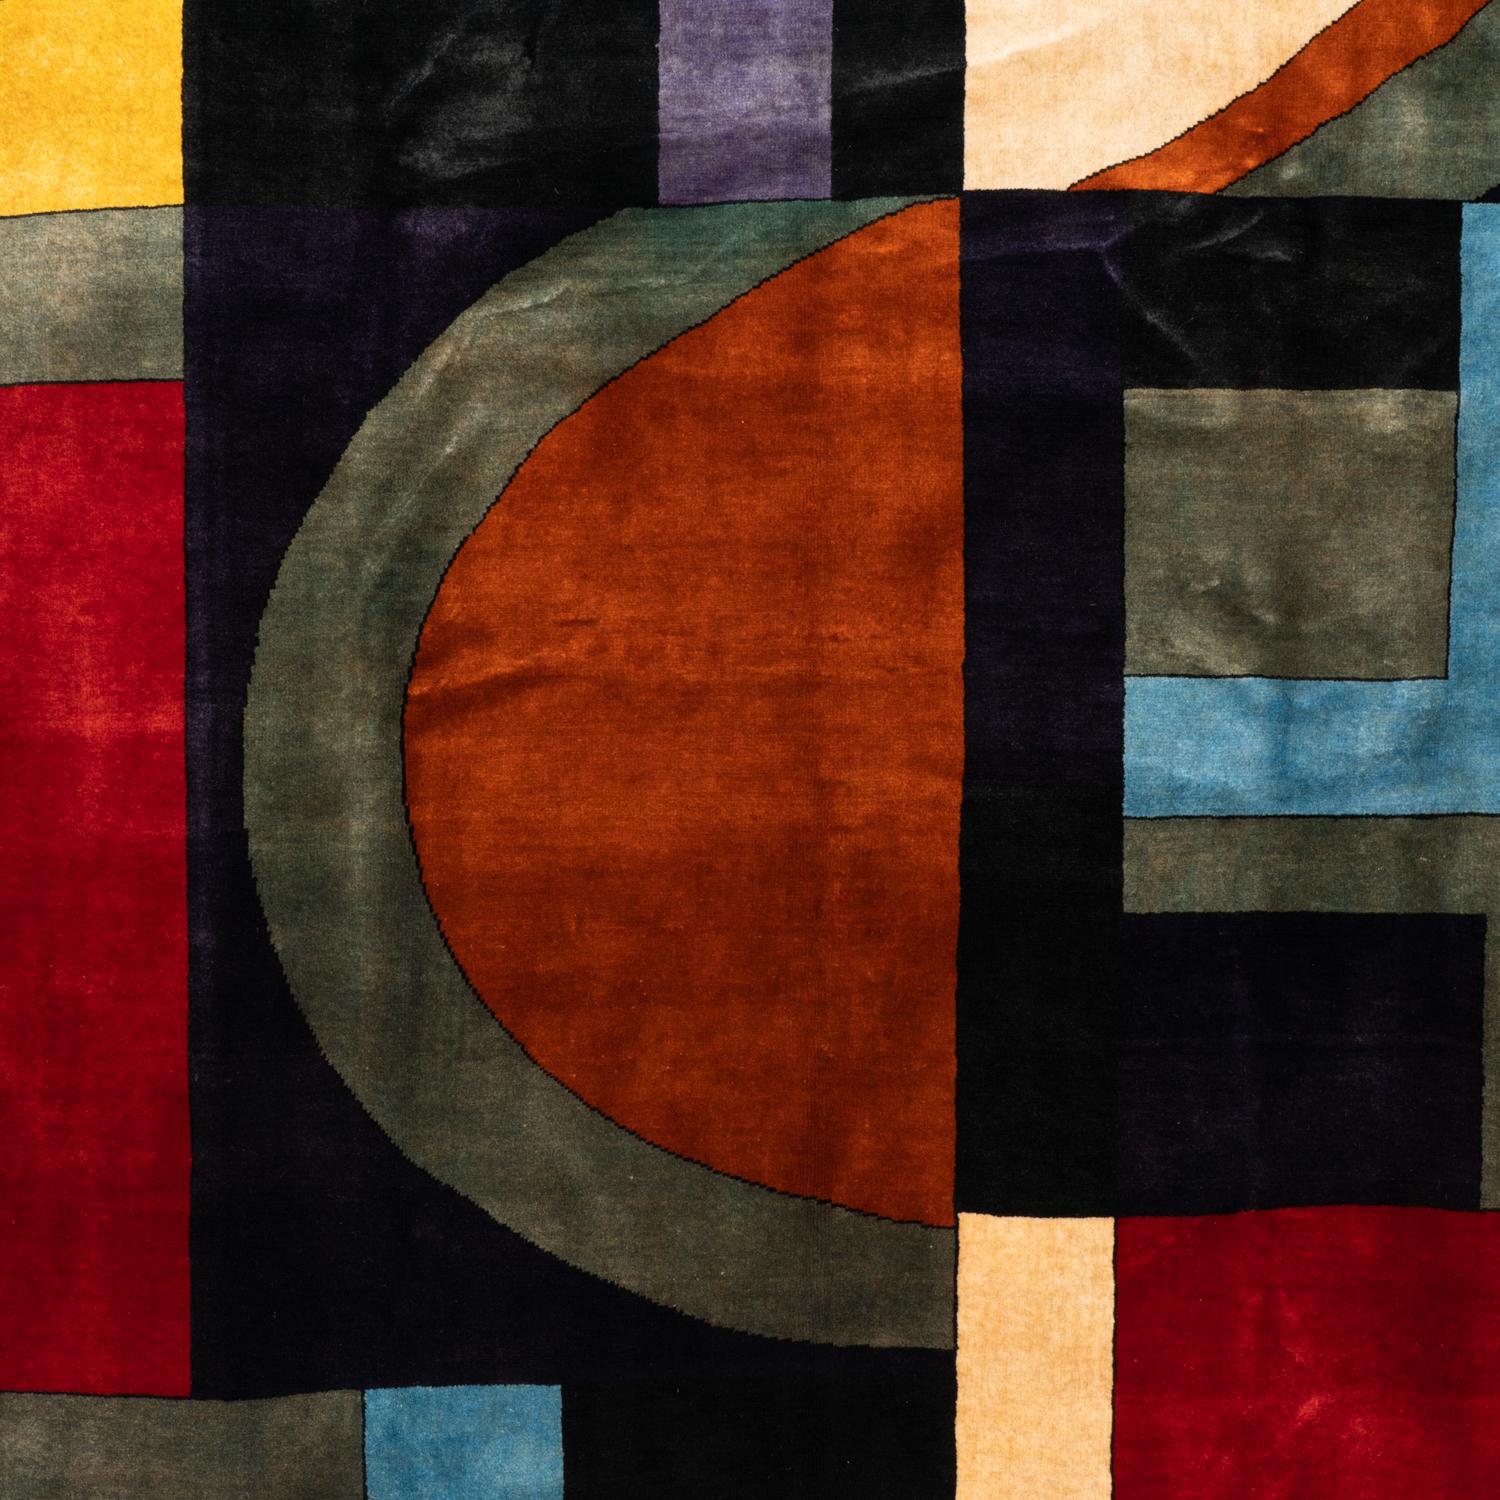 Teppich oder Wandteppich, inspiriert von Sonia Delaunay, mit geometrischen Formen in Blau-, Rot-, Gelb-, Beige- und Schwarztönen. Handgeknüpft und aus Merinowolle. Kann auf dem Boden aufgestellt oder an der Wand präsentiert werden.

Zeitgenössische